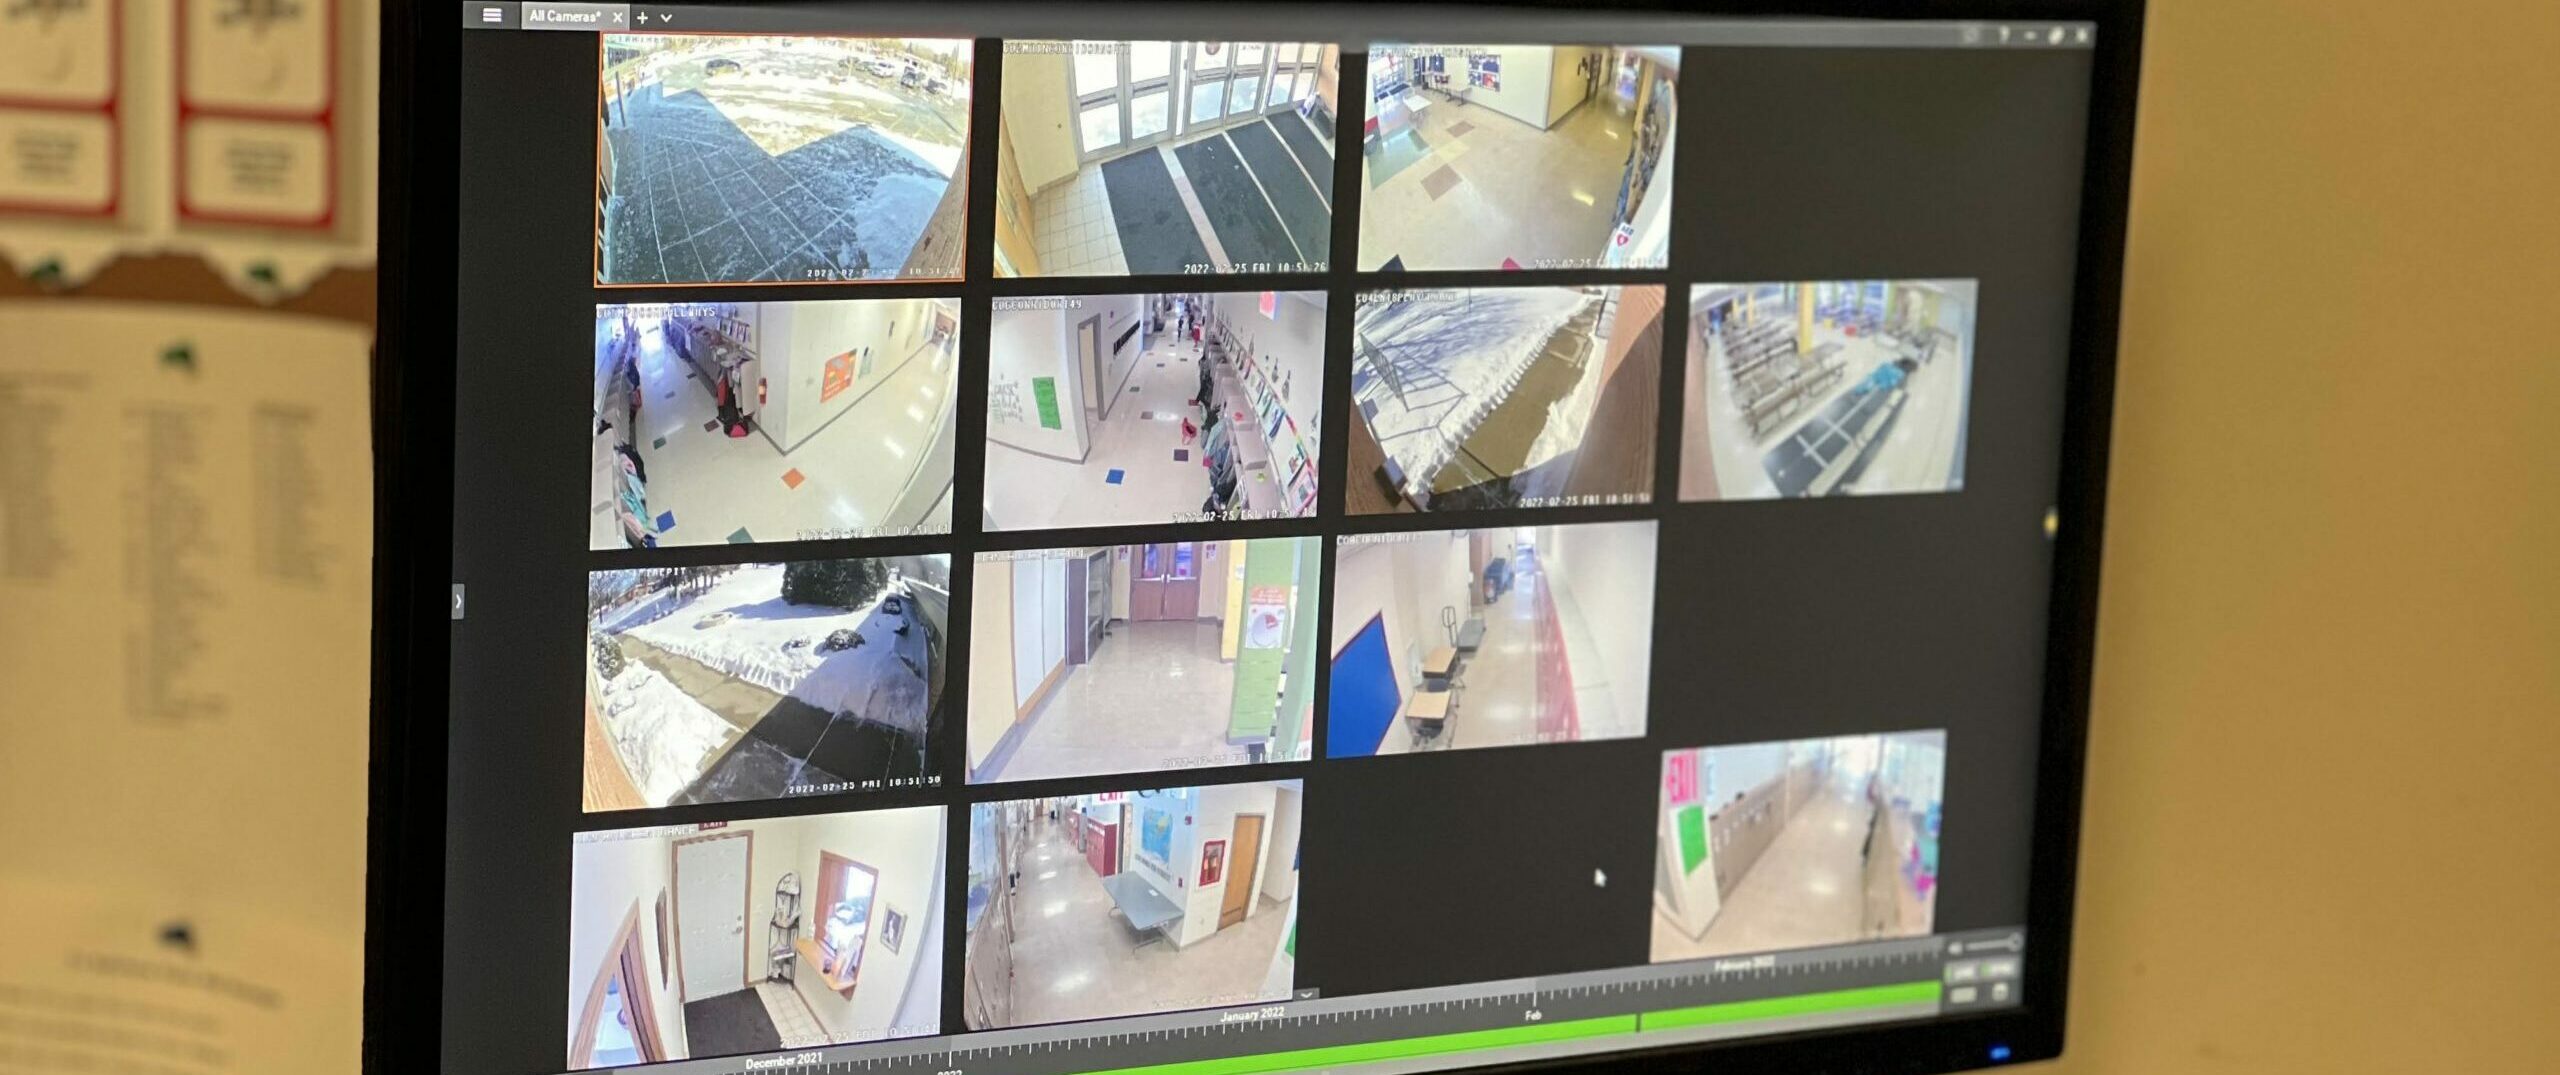 St. Bernard Parish & Catholic School Video Surveillance